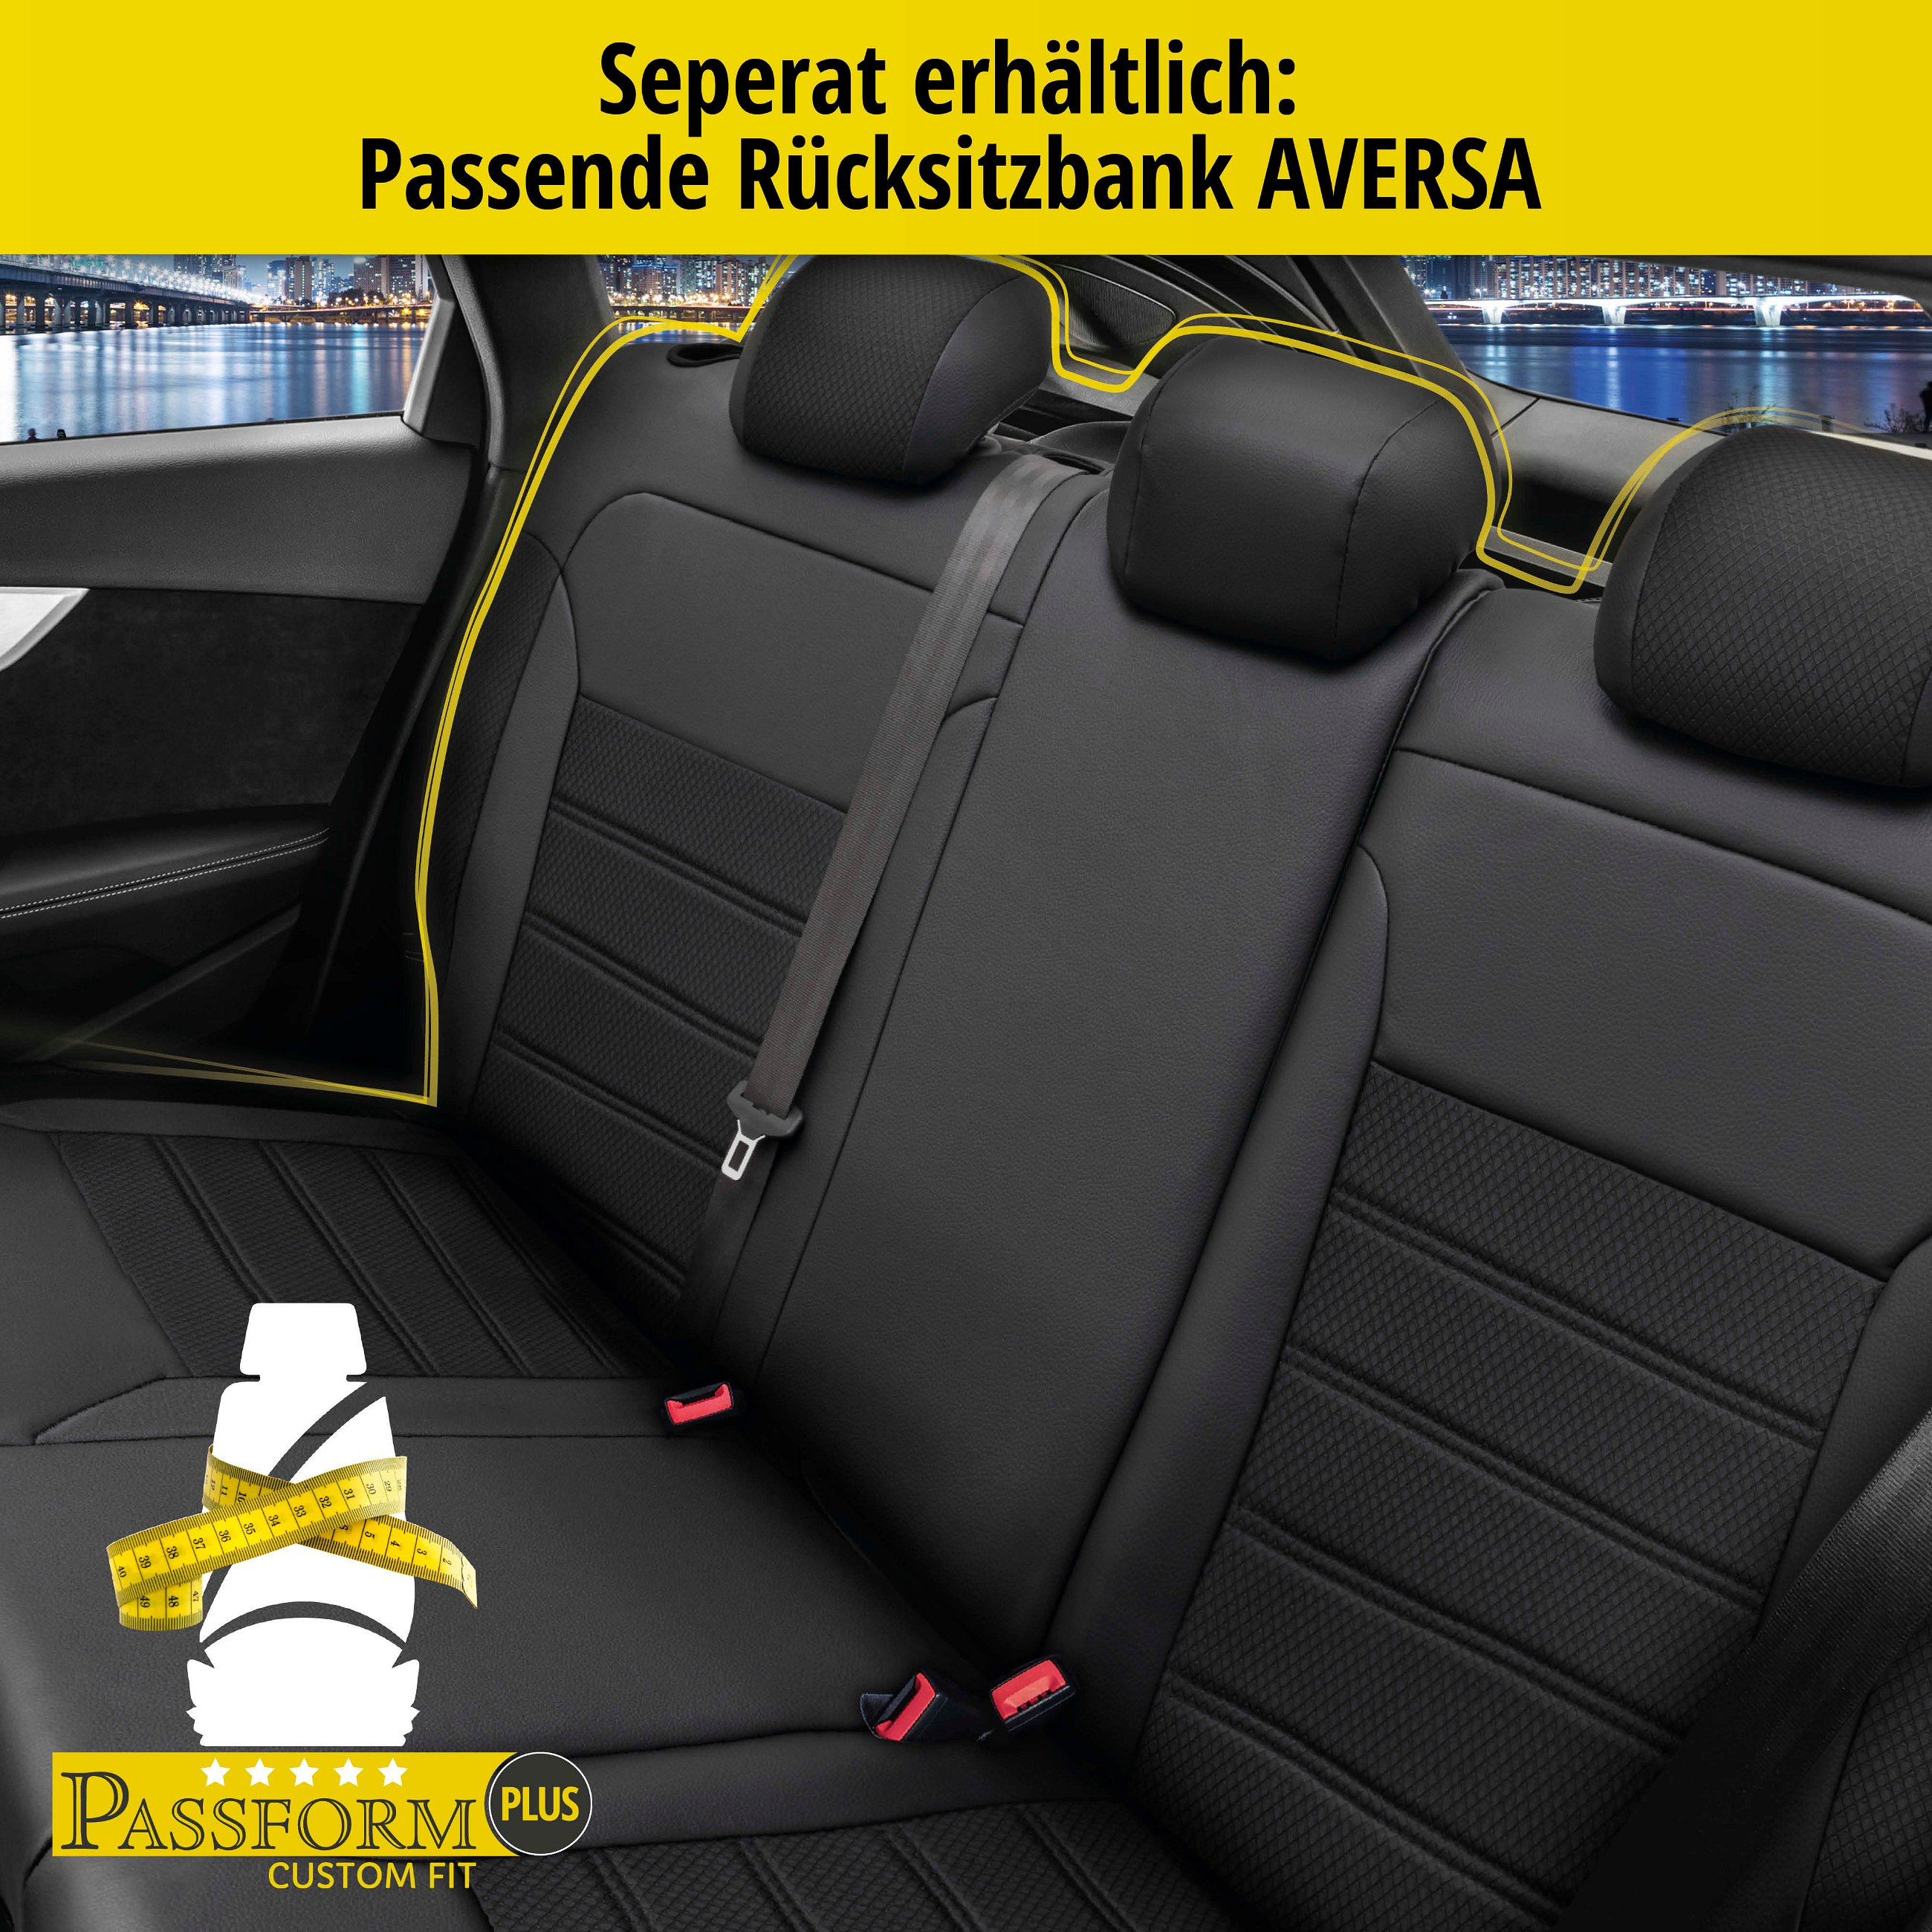 Passform Sitzbezug Aversa für Mini Cooper 06/2001 - 01/2014, 2 Einzelsitzbezüge für Normalsitze